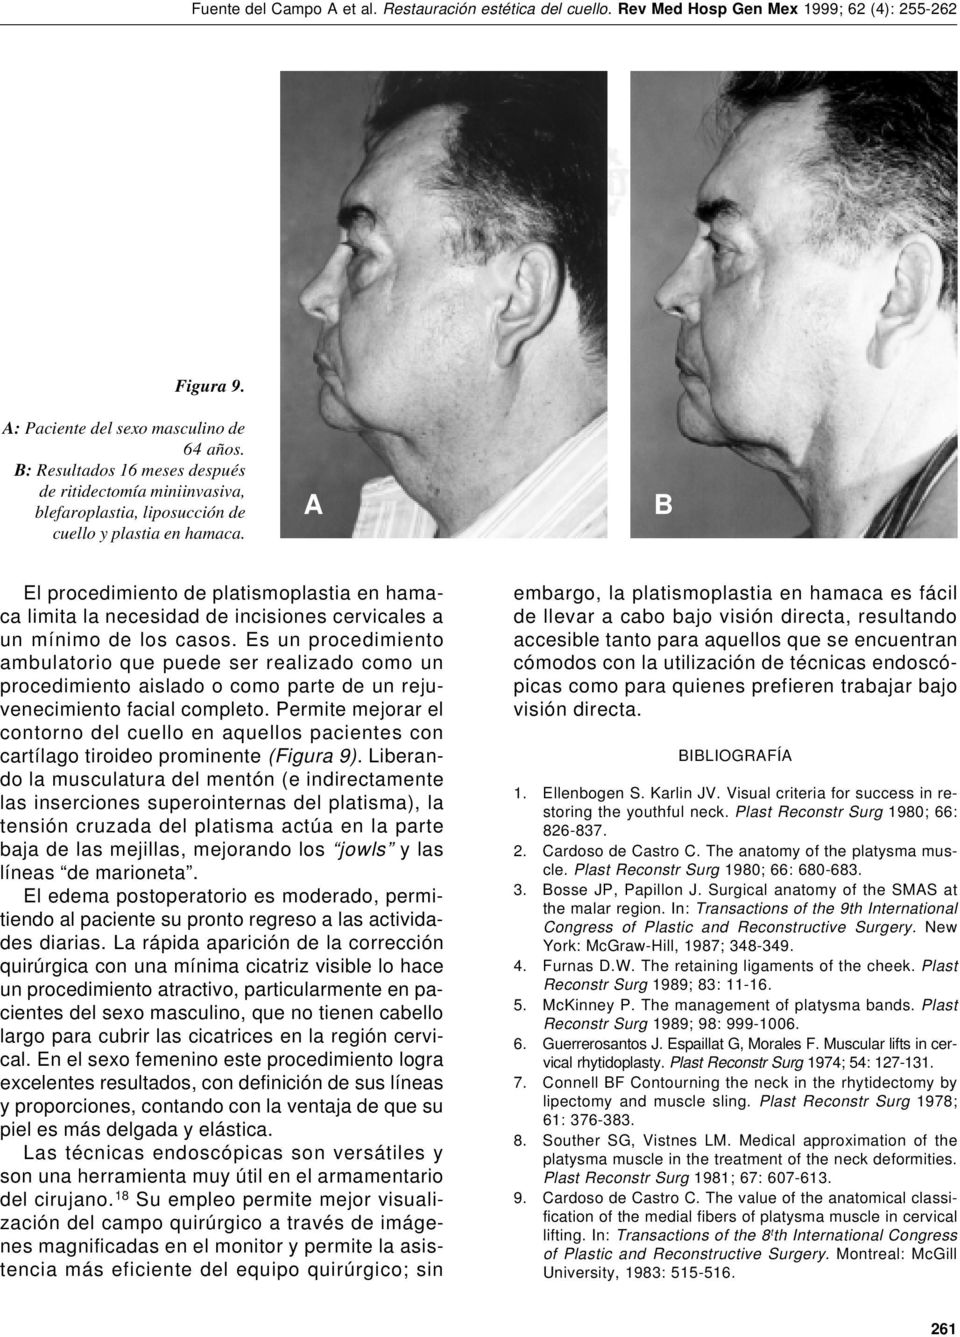 Es un procedimiento ambulatorio que puede ser realizado como un procedimiento aislado o como parte de un rejuvenecimiento facial completo.